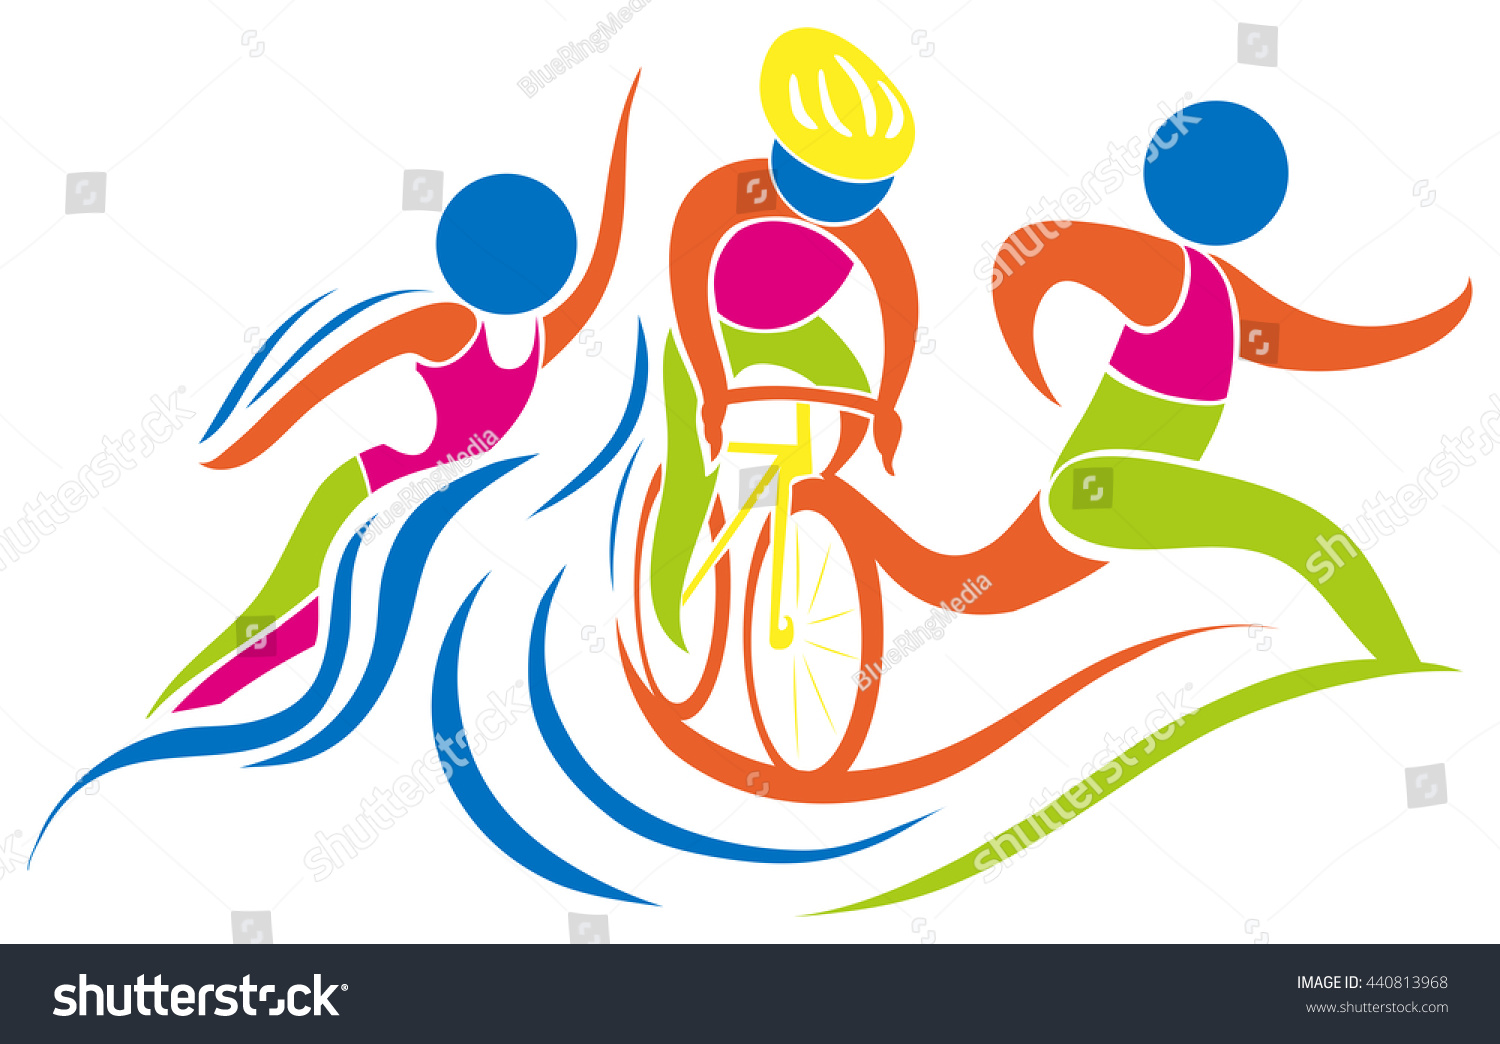 Triathlon Icon In Colors Illustration - 440813968 : Shutterstock